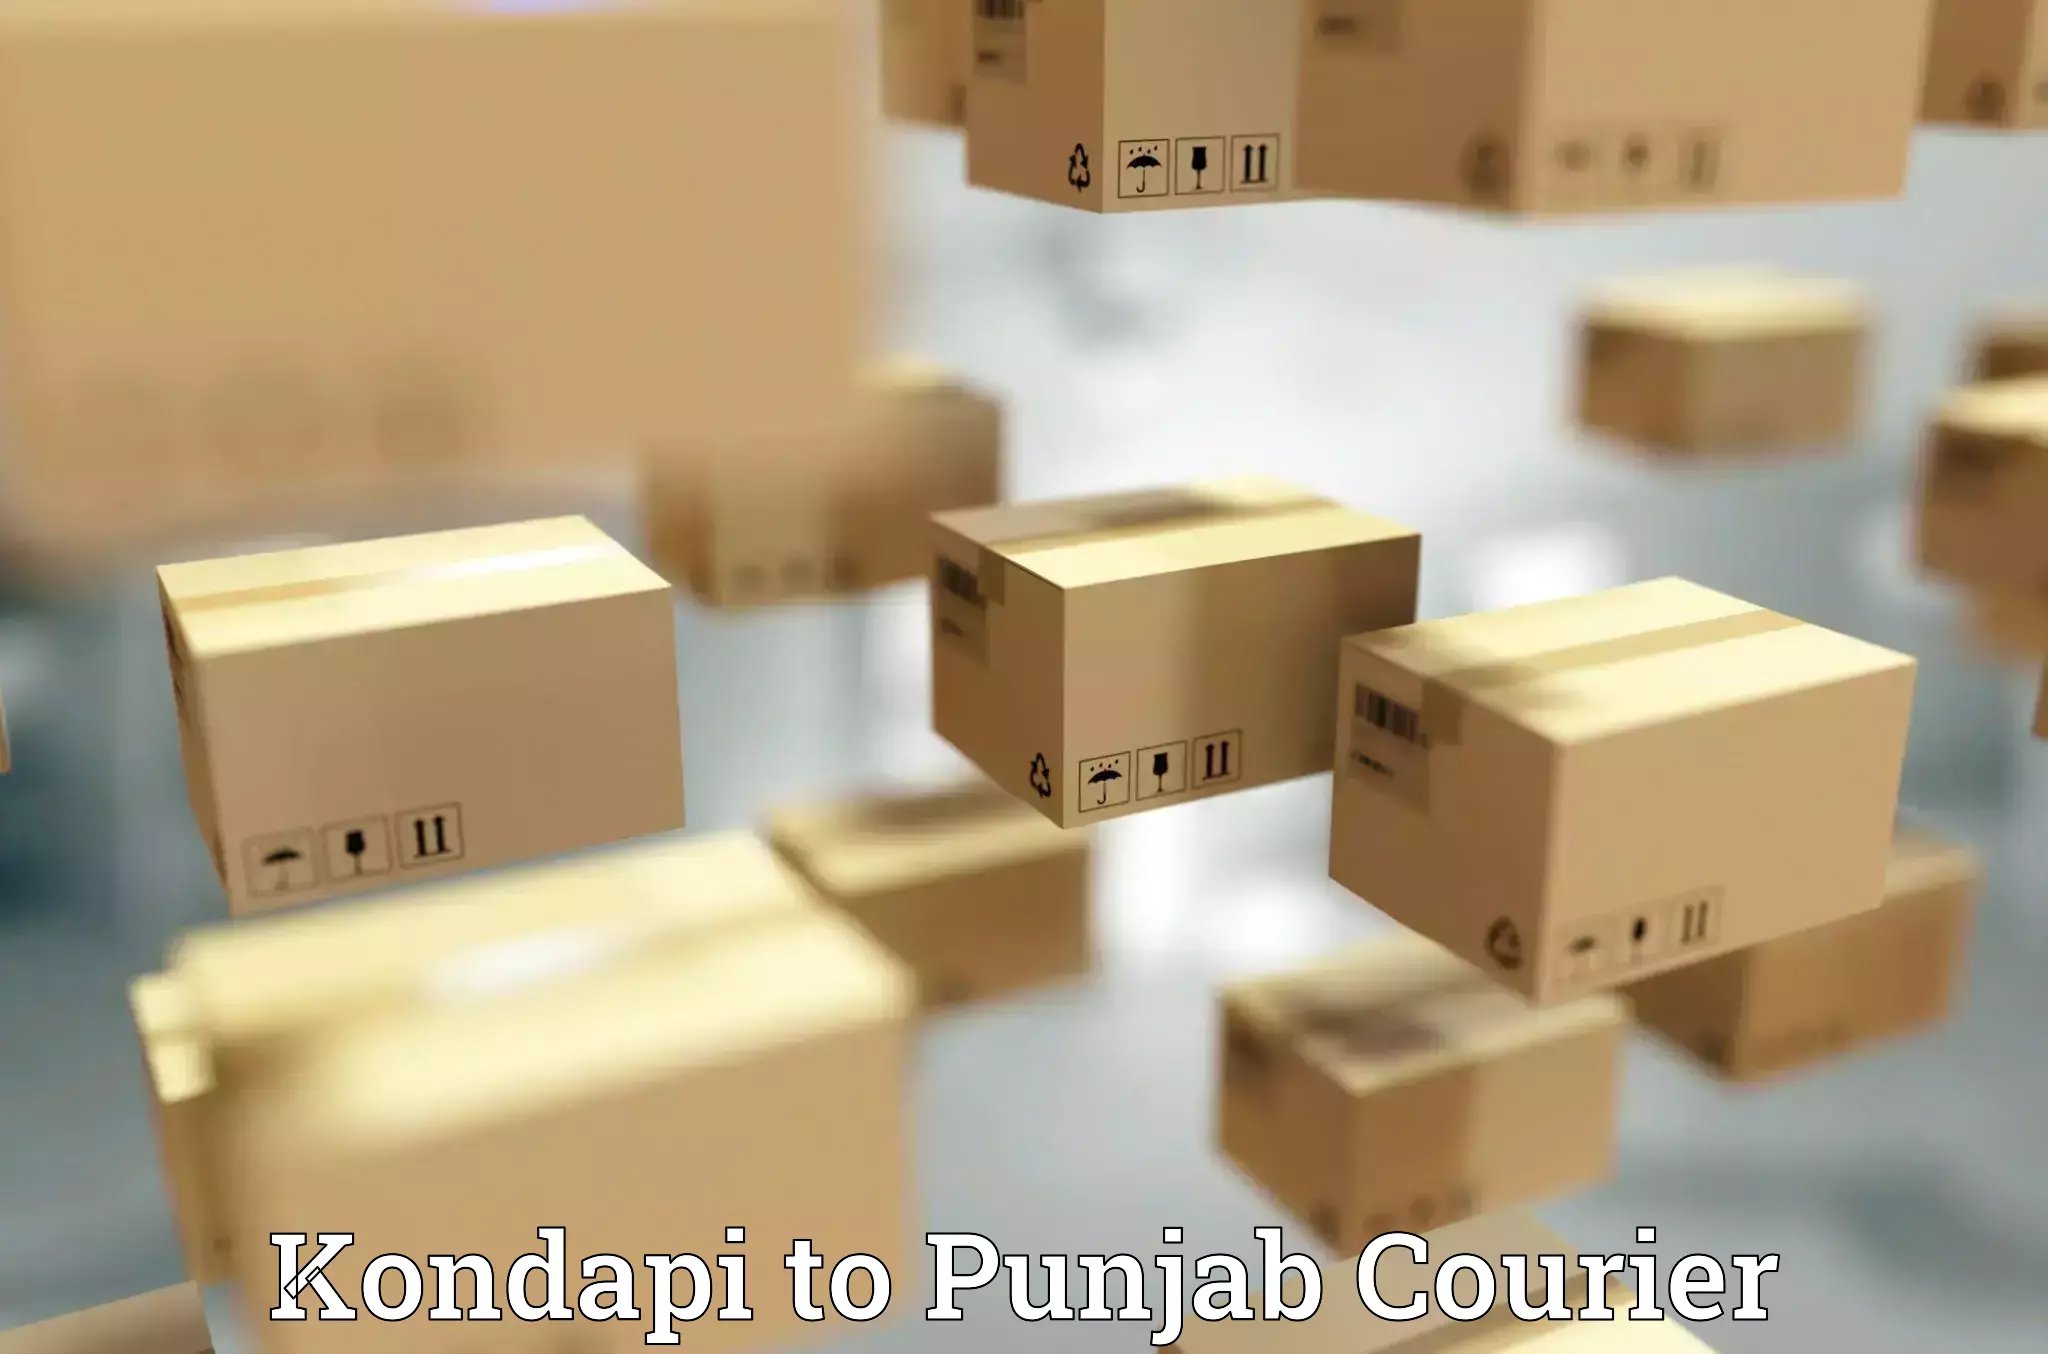 Efficient parcel delivery Kondapi to Central University of Punjab Bathinda